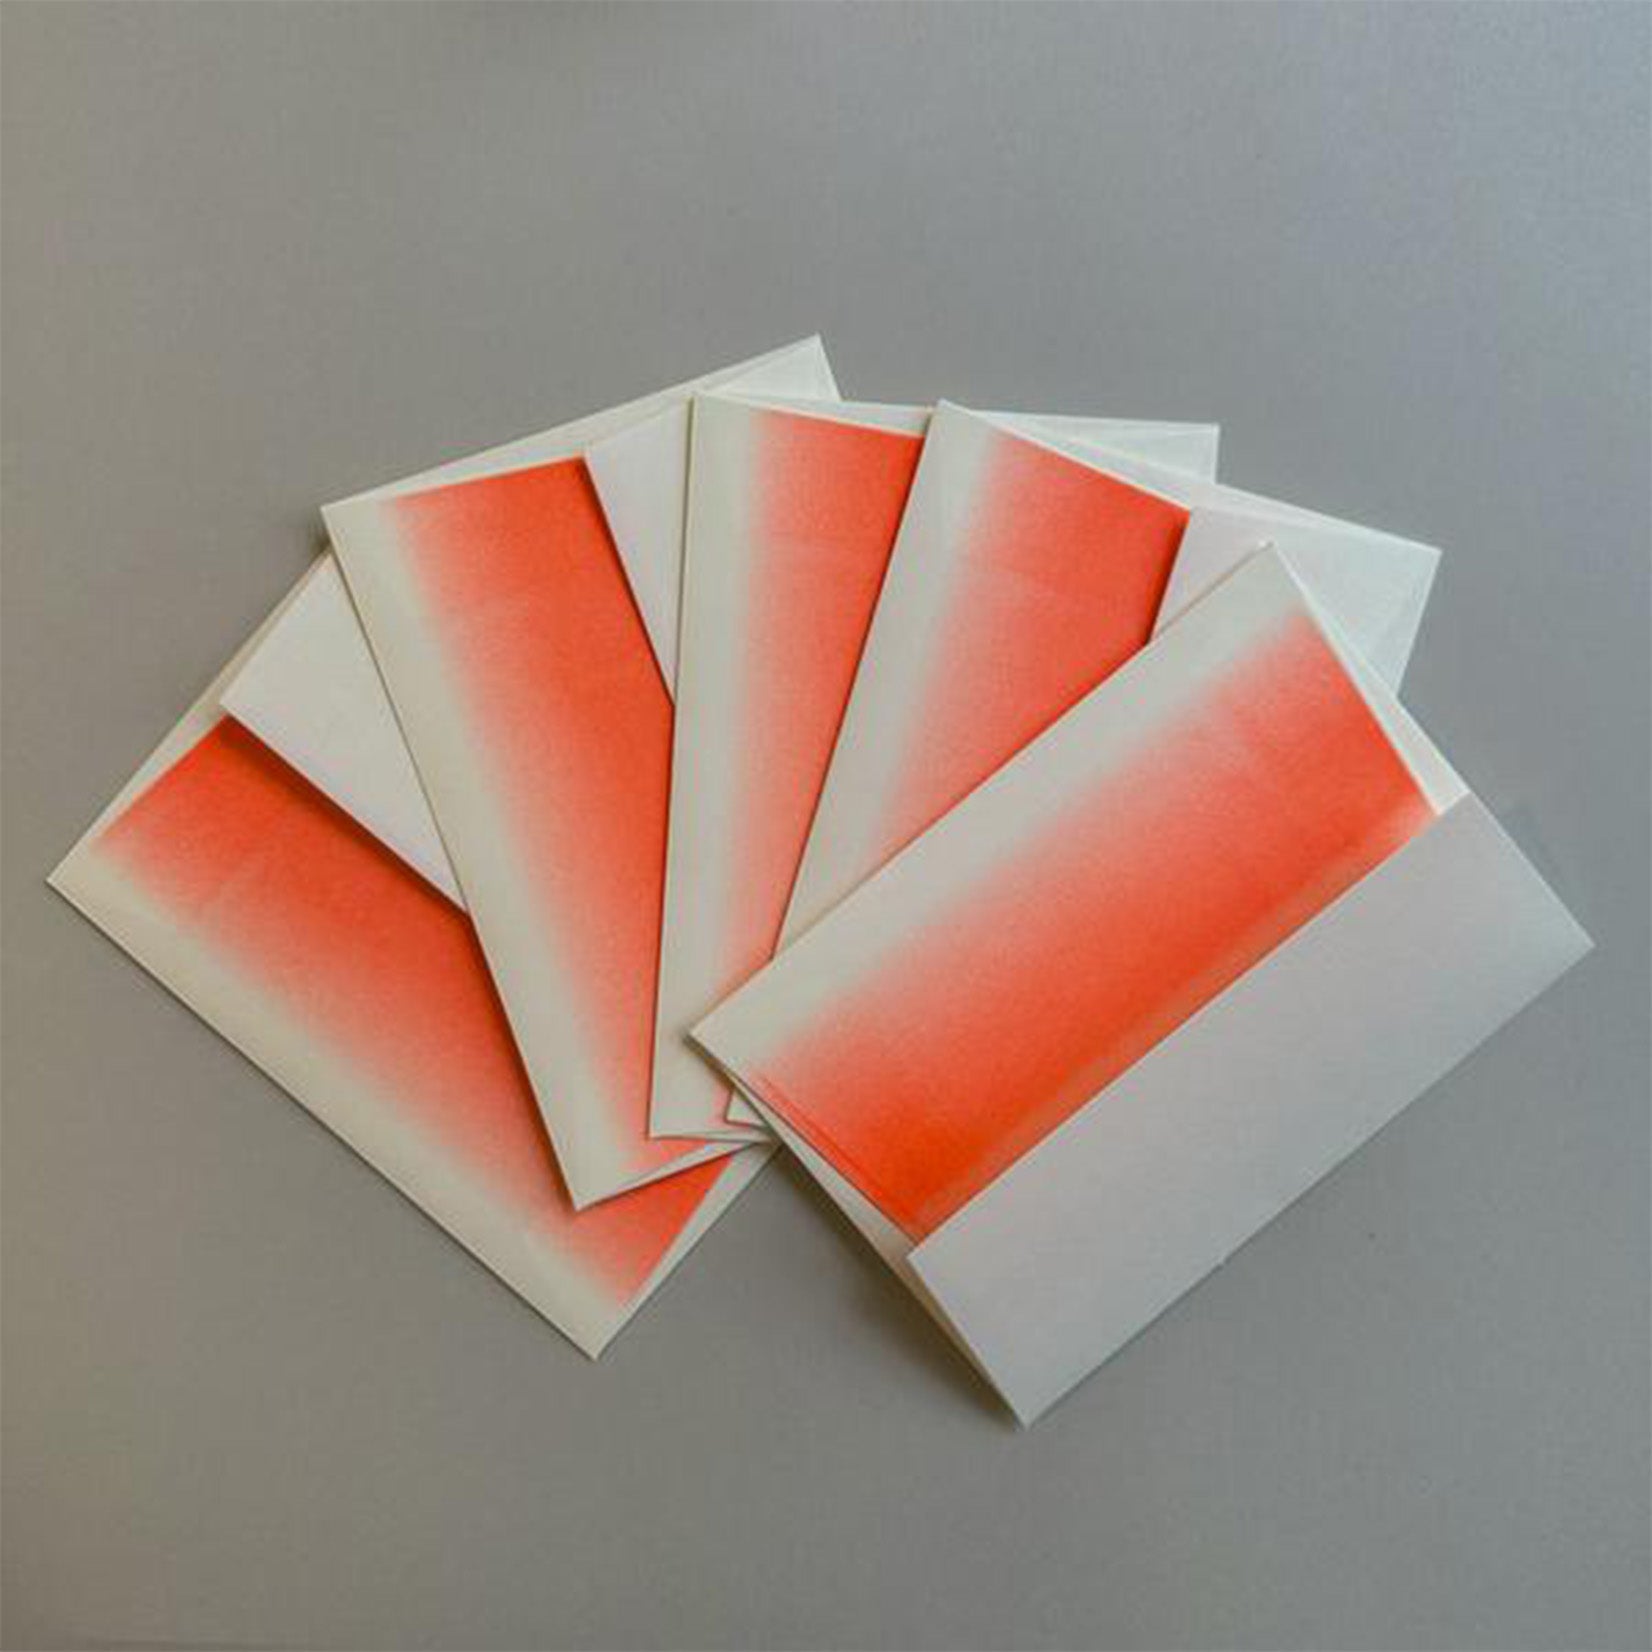 Herr & Frau Rio Karte und Kuvert Papeterie Set Risographie Riso Druck Schreibset Neon Orange